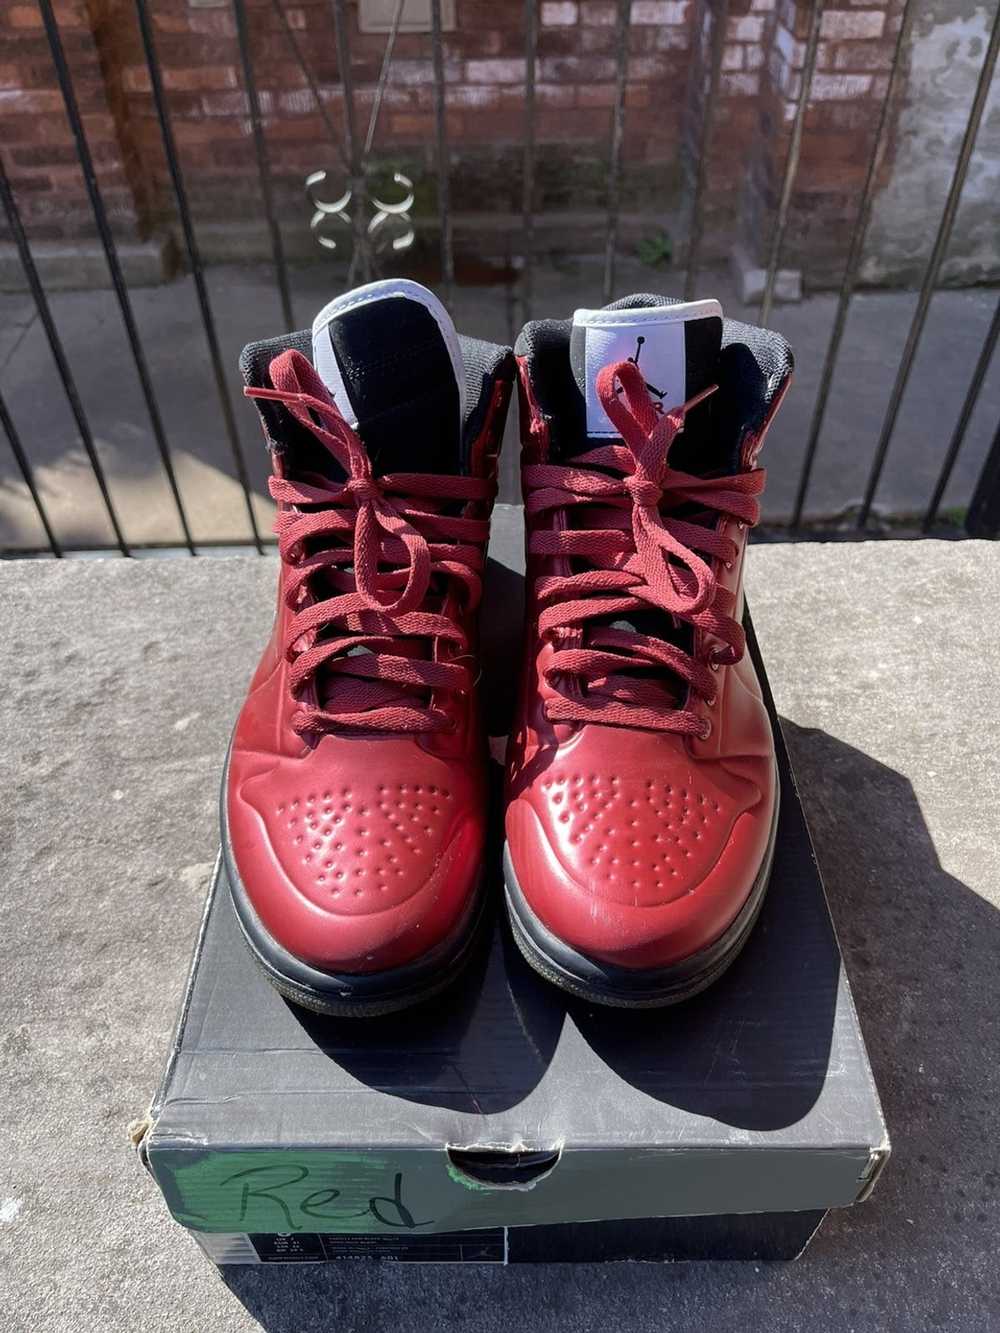 Jordan Brand × Nike Air Jordan 1 “Anodized Red” - image 3